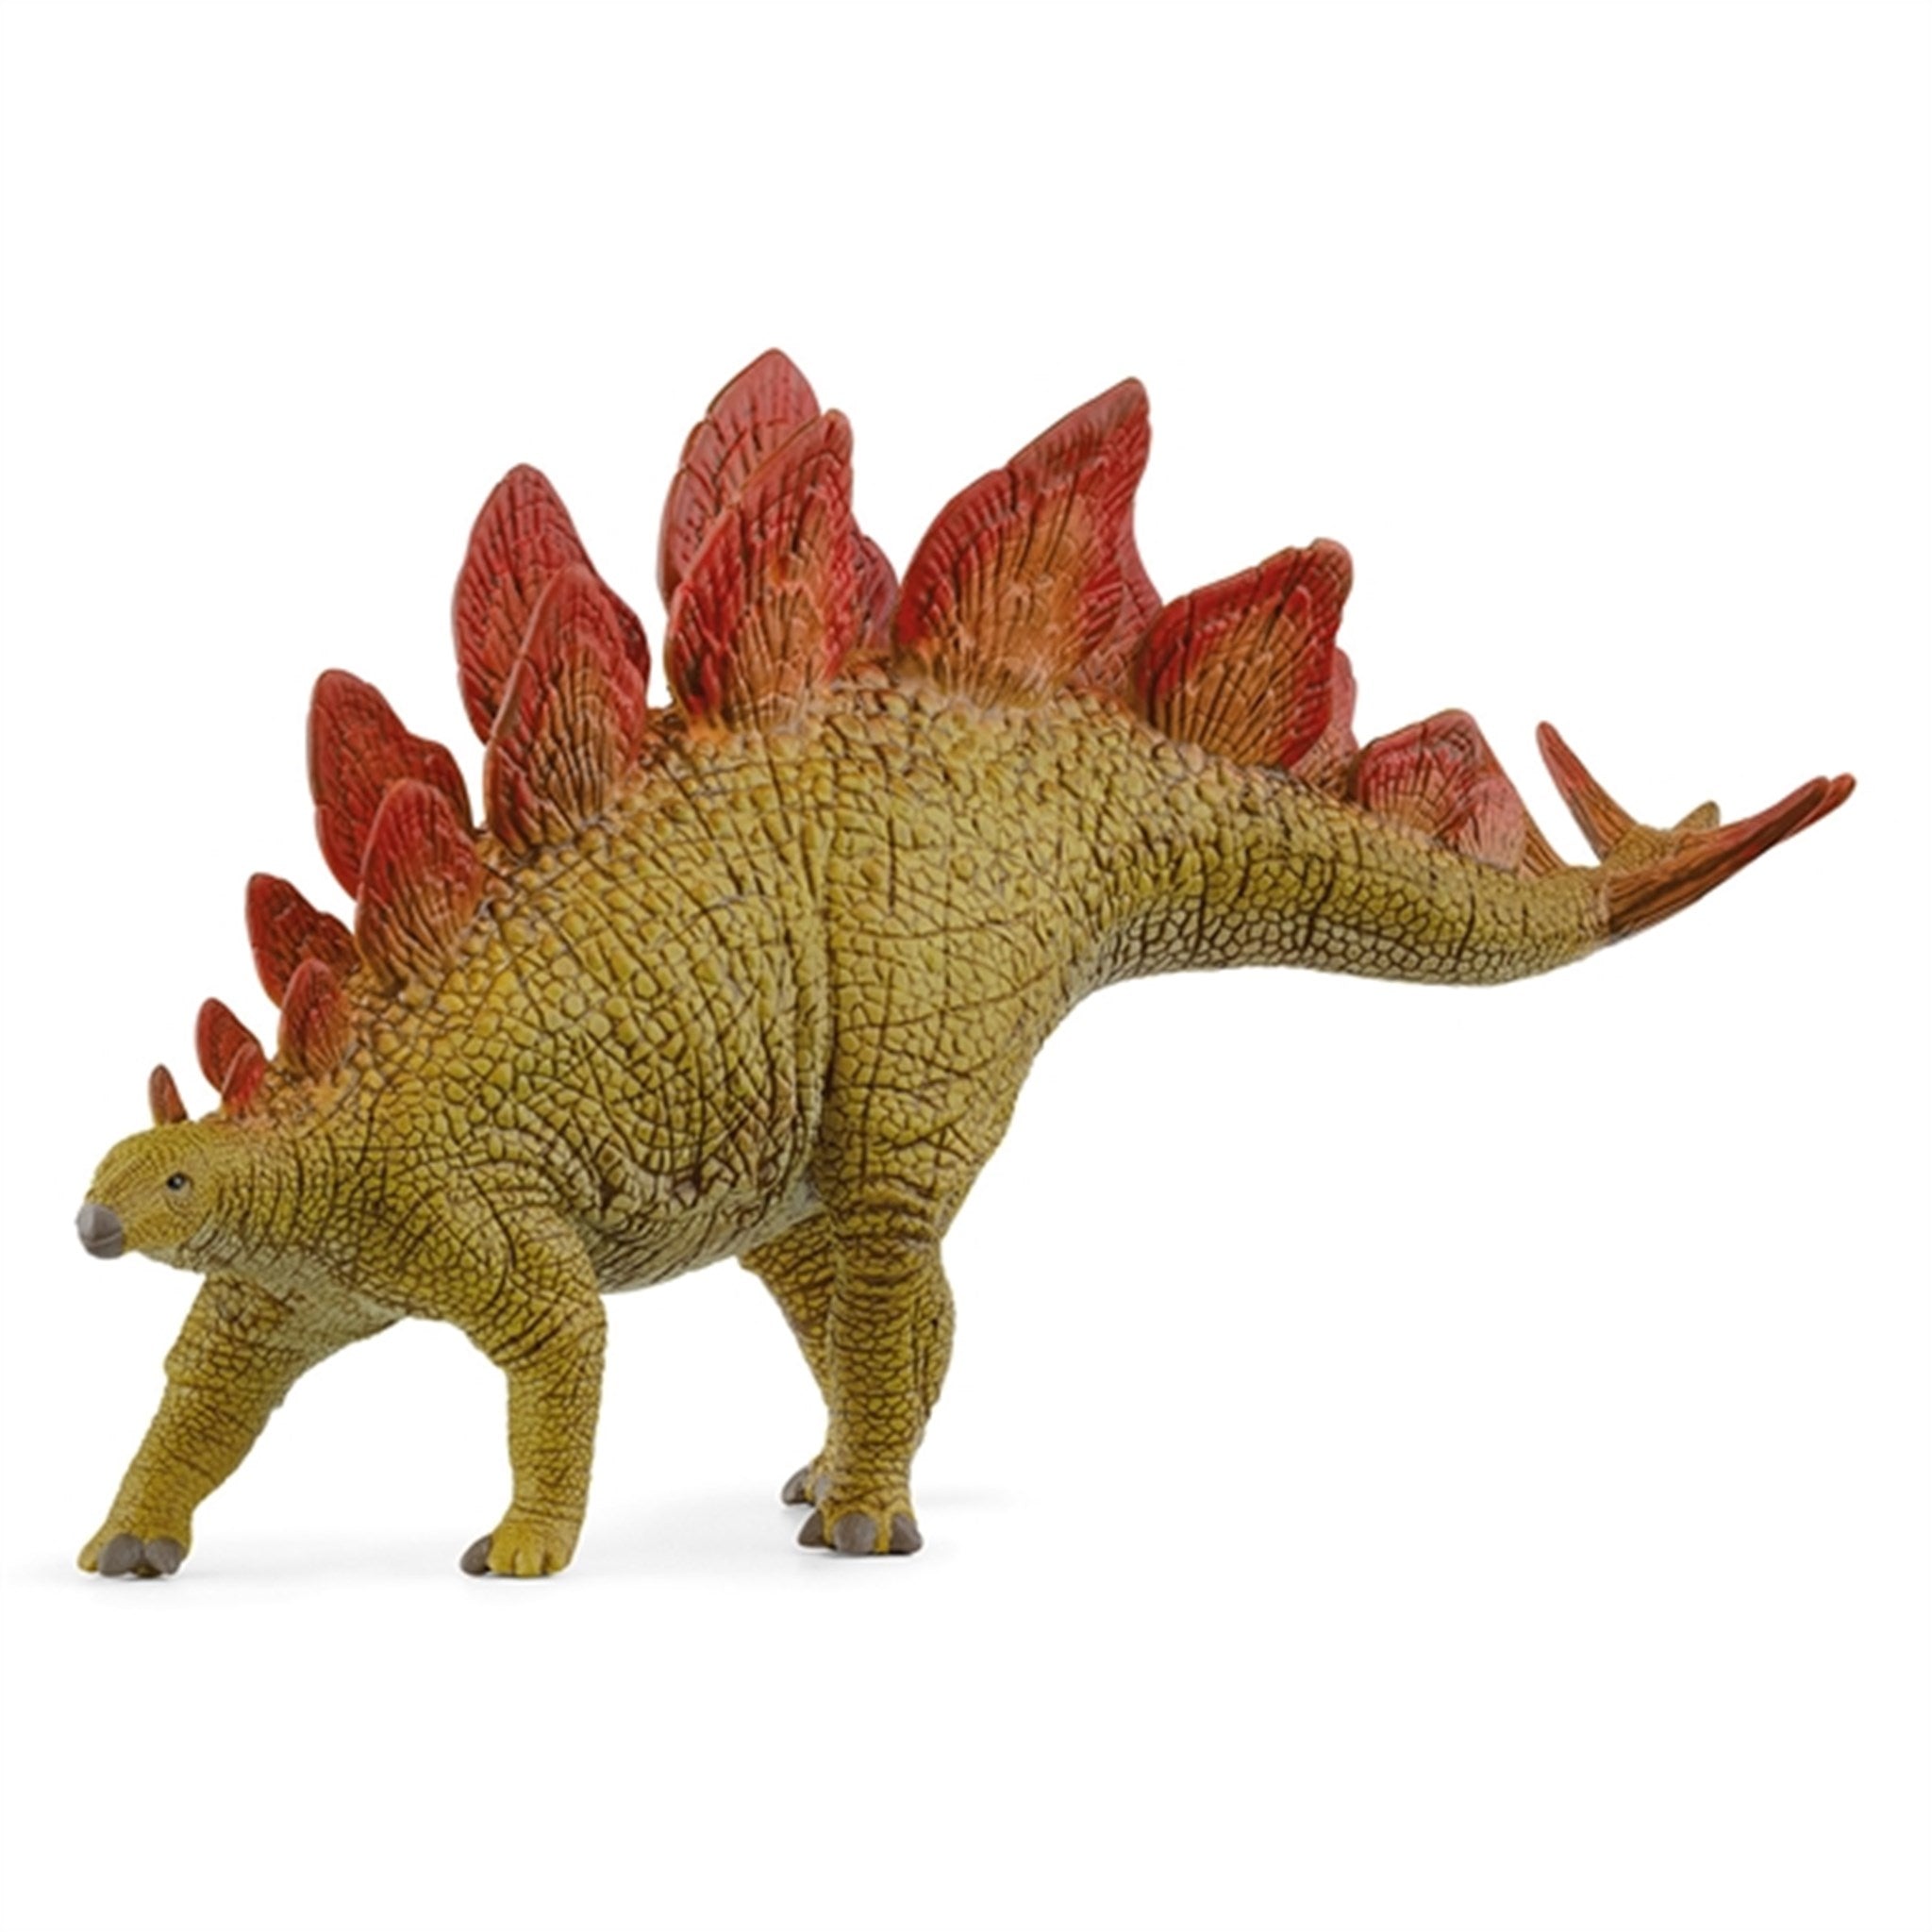 Schleich Dinosaurs Stegosaurus